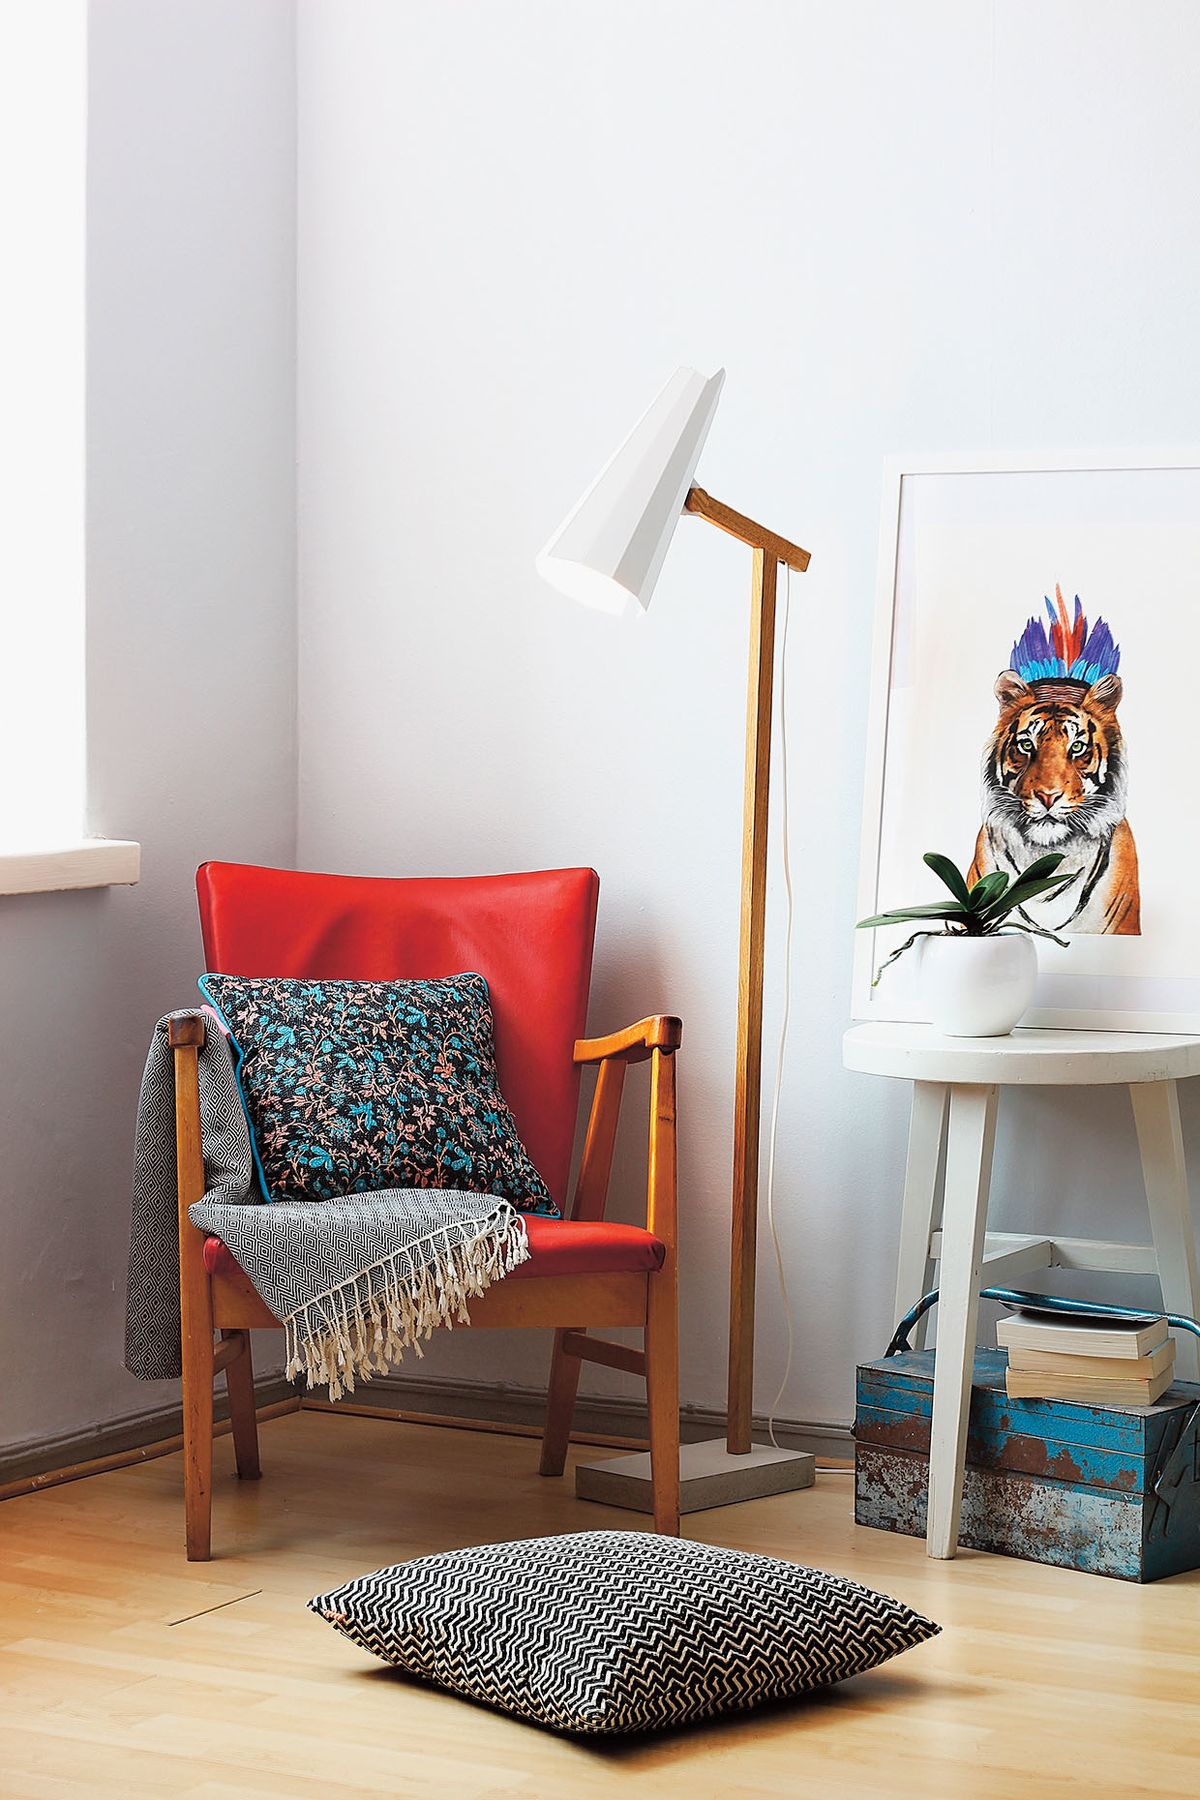 Stojací lampa Filly přinese správnou dávku skandinávského stylu do vašeho domova. Ručně vyrobená lampa s krátkým ramenem dodává ideální světlo pro čtení a můžete jí najít místo třeba vedle pohovky, křesla, pracovního stolu nebo postele, cena 12 490 Kč.